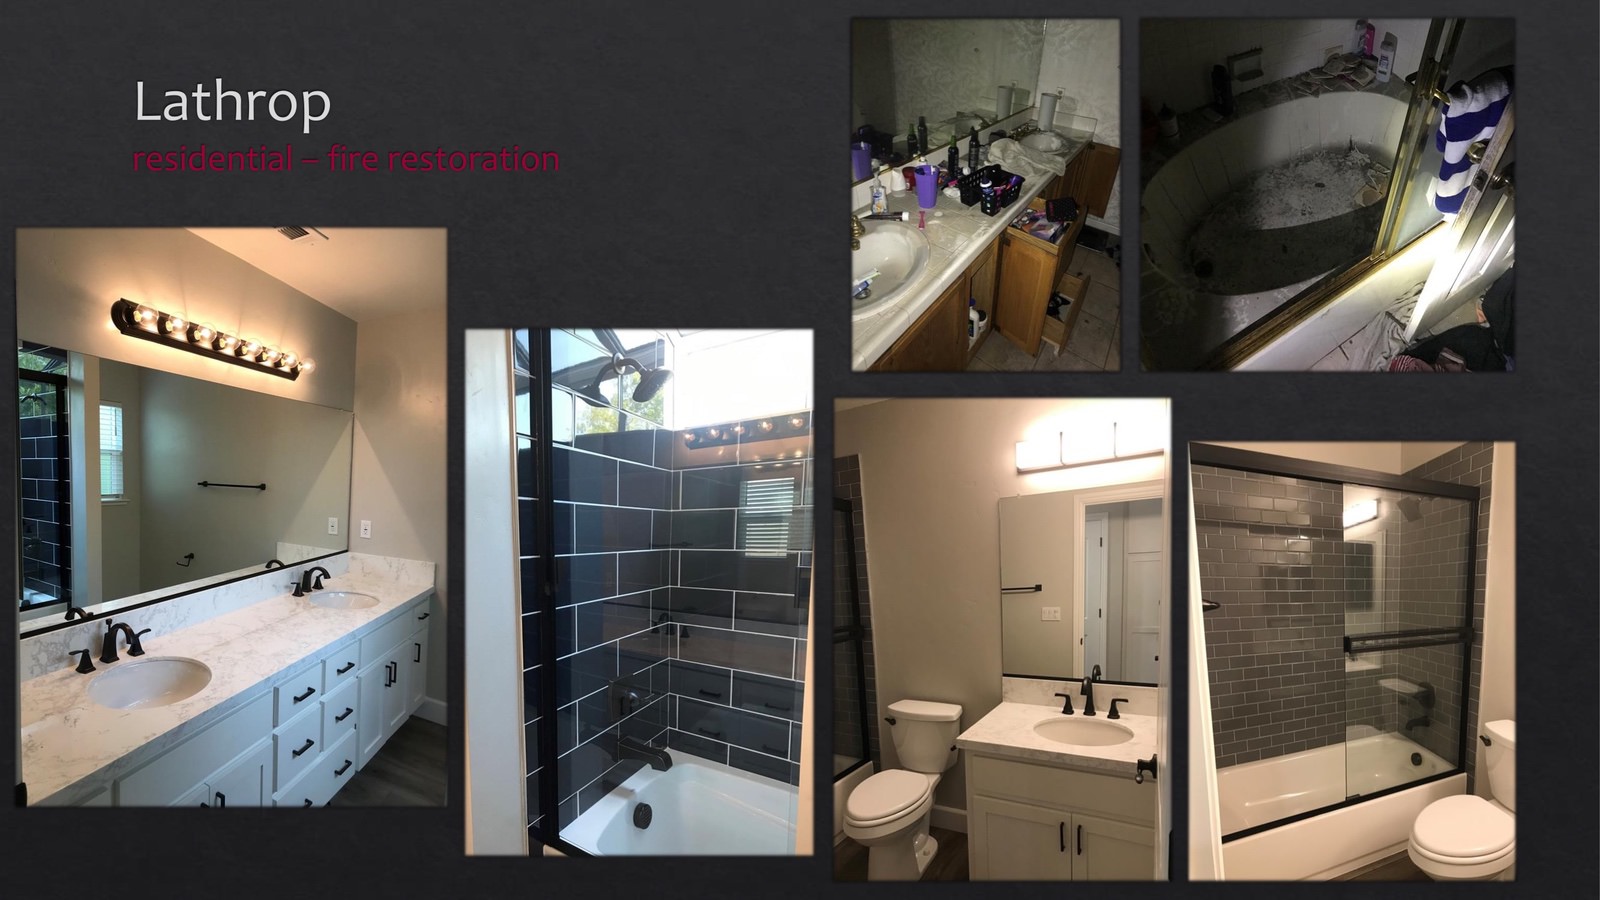 Lathrop Residential fire restoration - bathroom